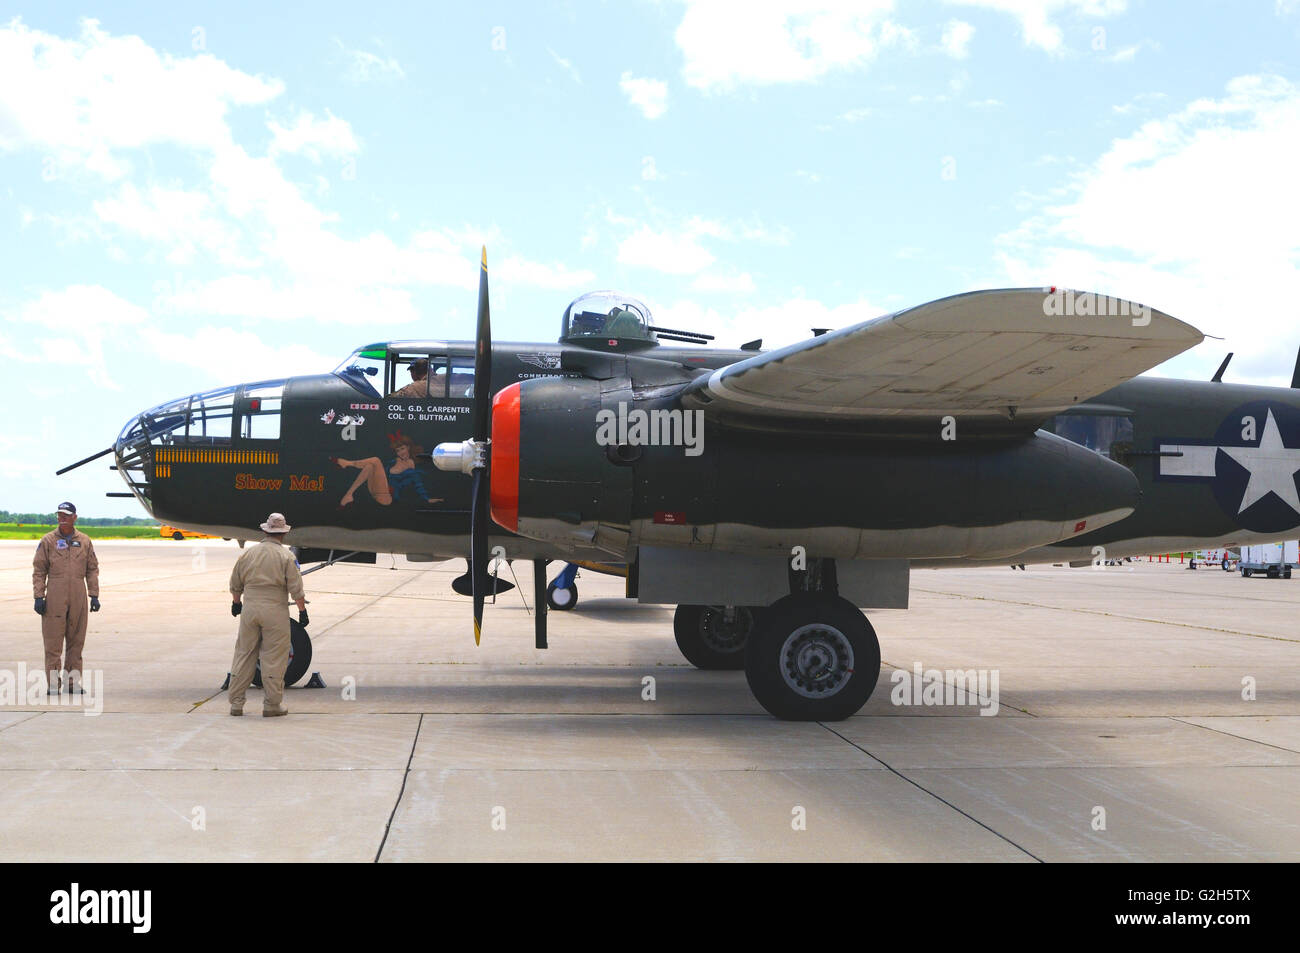 Une deuxième guerre mondiale B-25 bombardier léger avec nose art affichée à un meeting aérien Banque D'Images